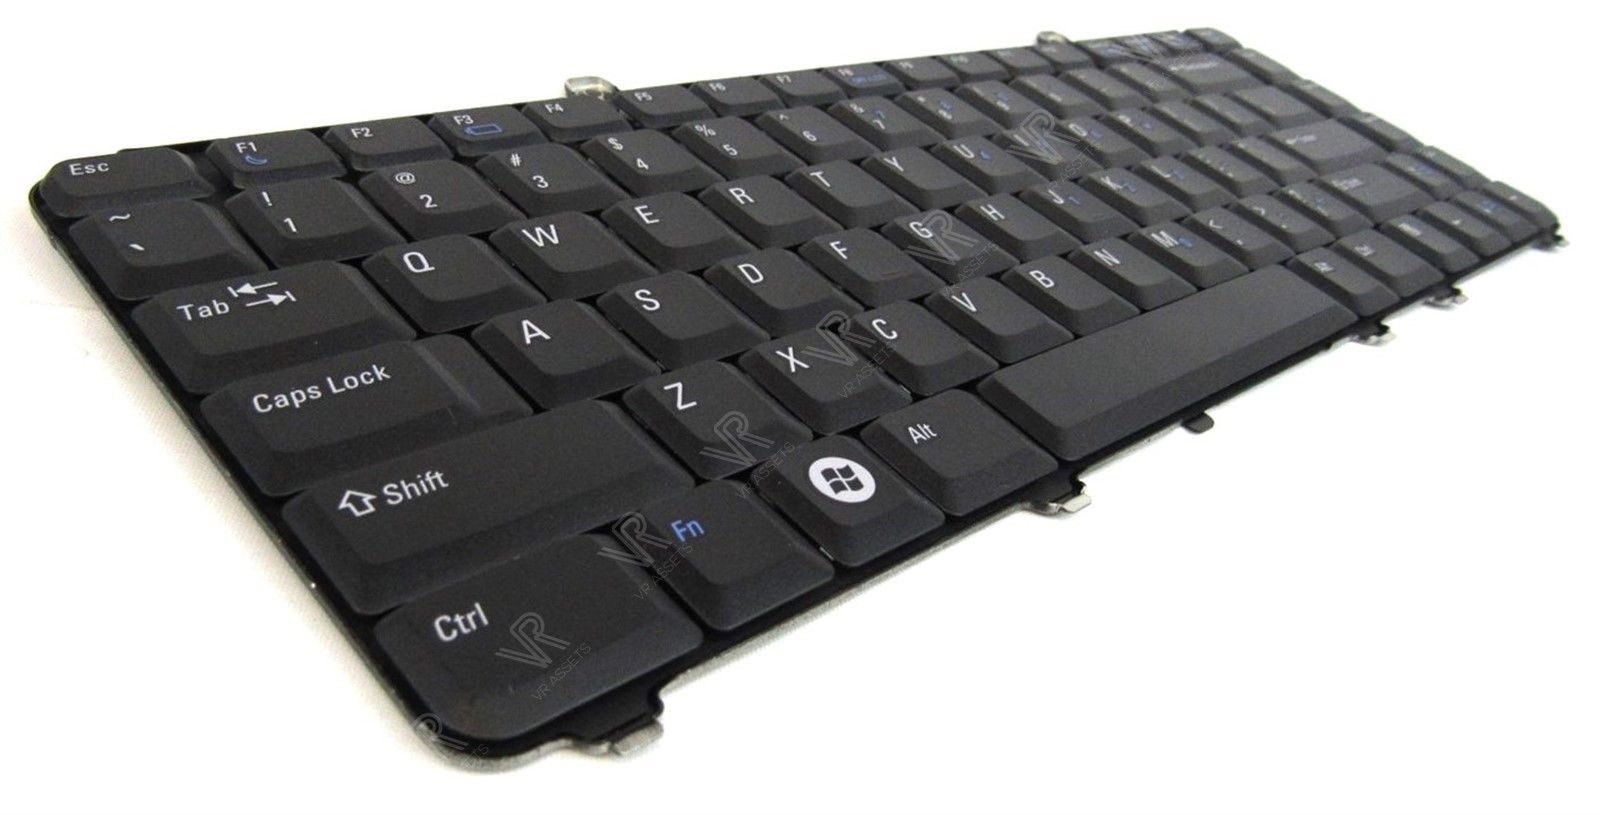 Dell Vostro 1400 1500 1521 1000 US Keyboard Black NSK-D9201 JM629 0JM629